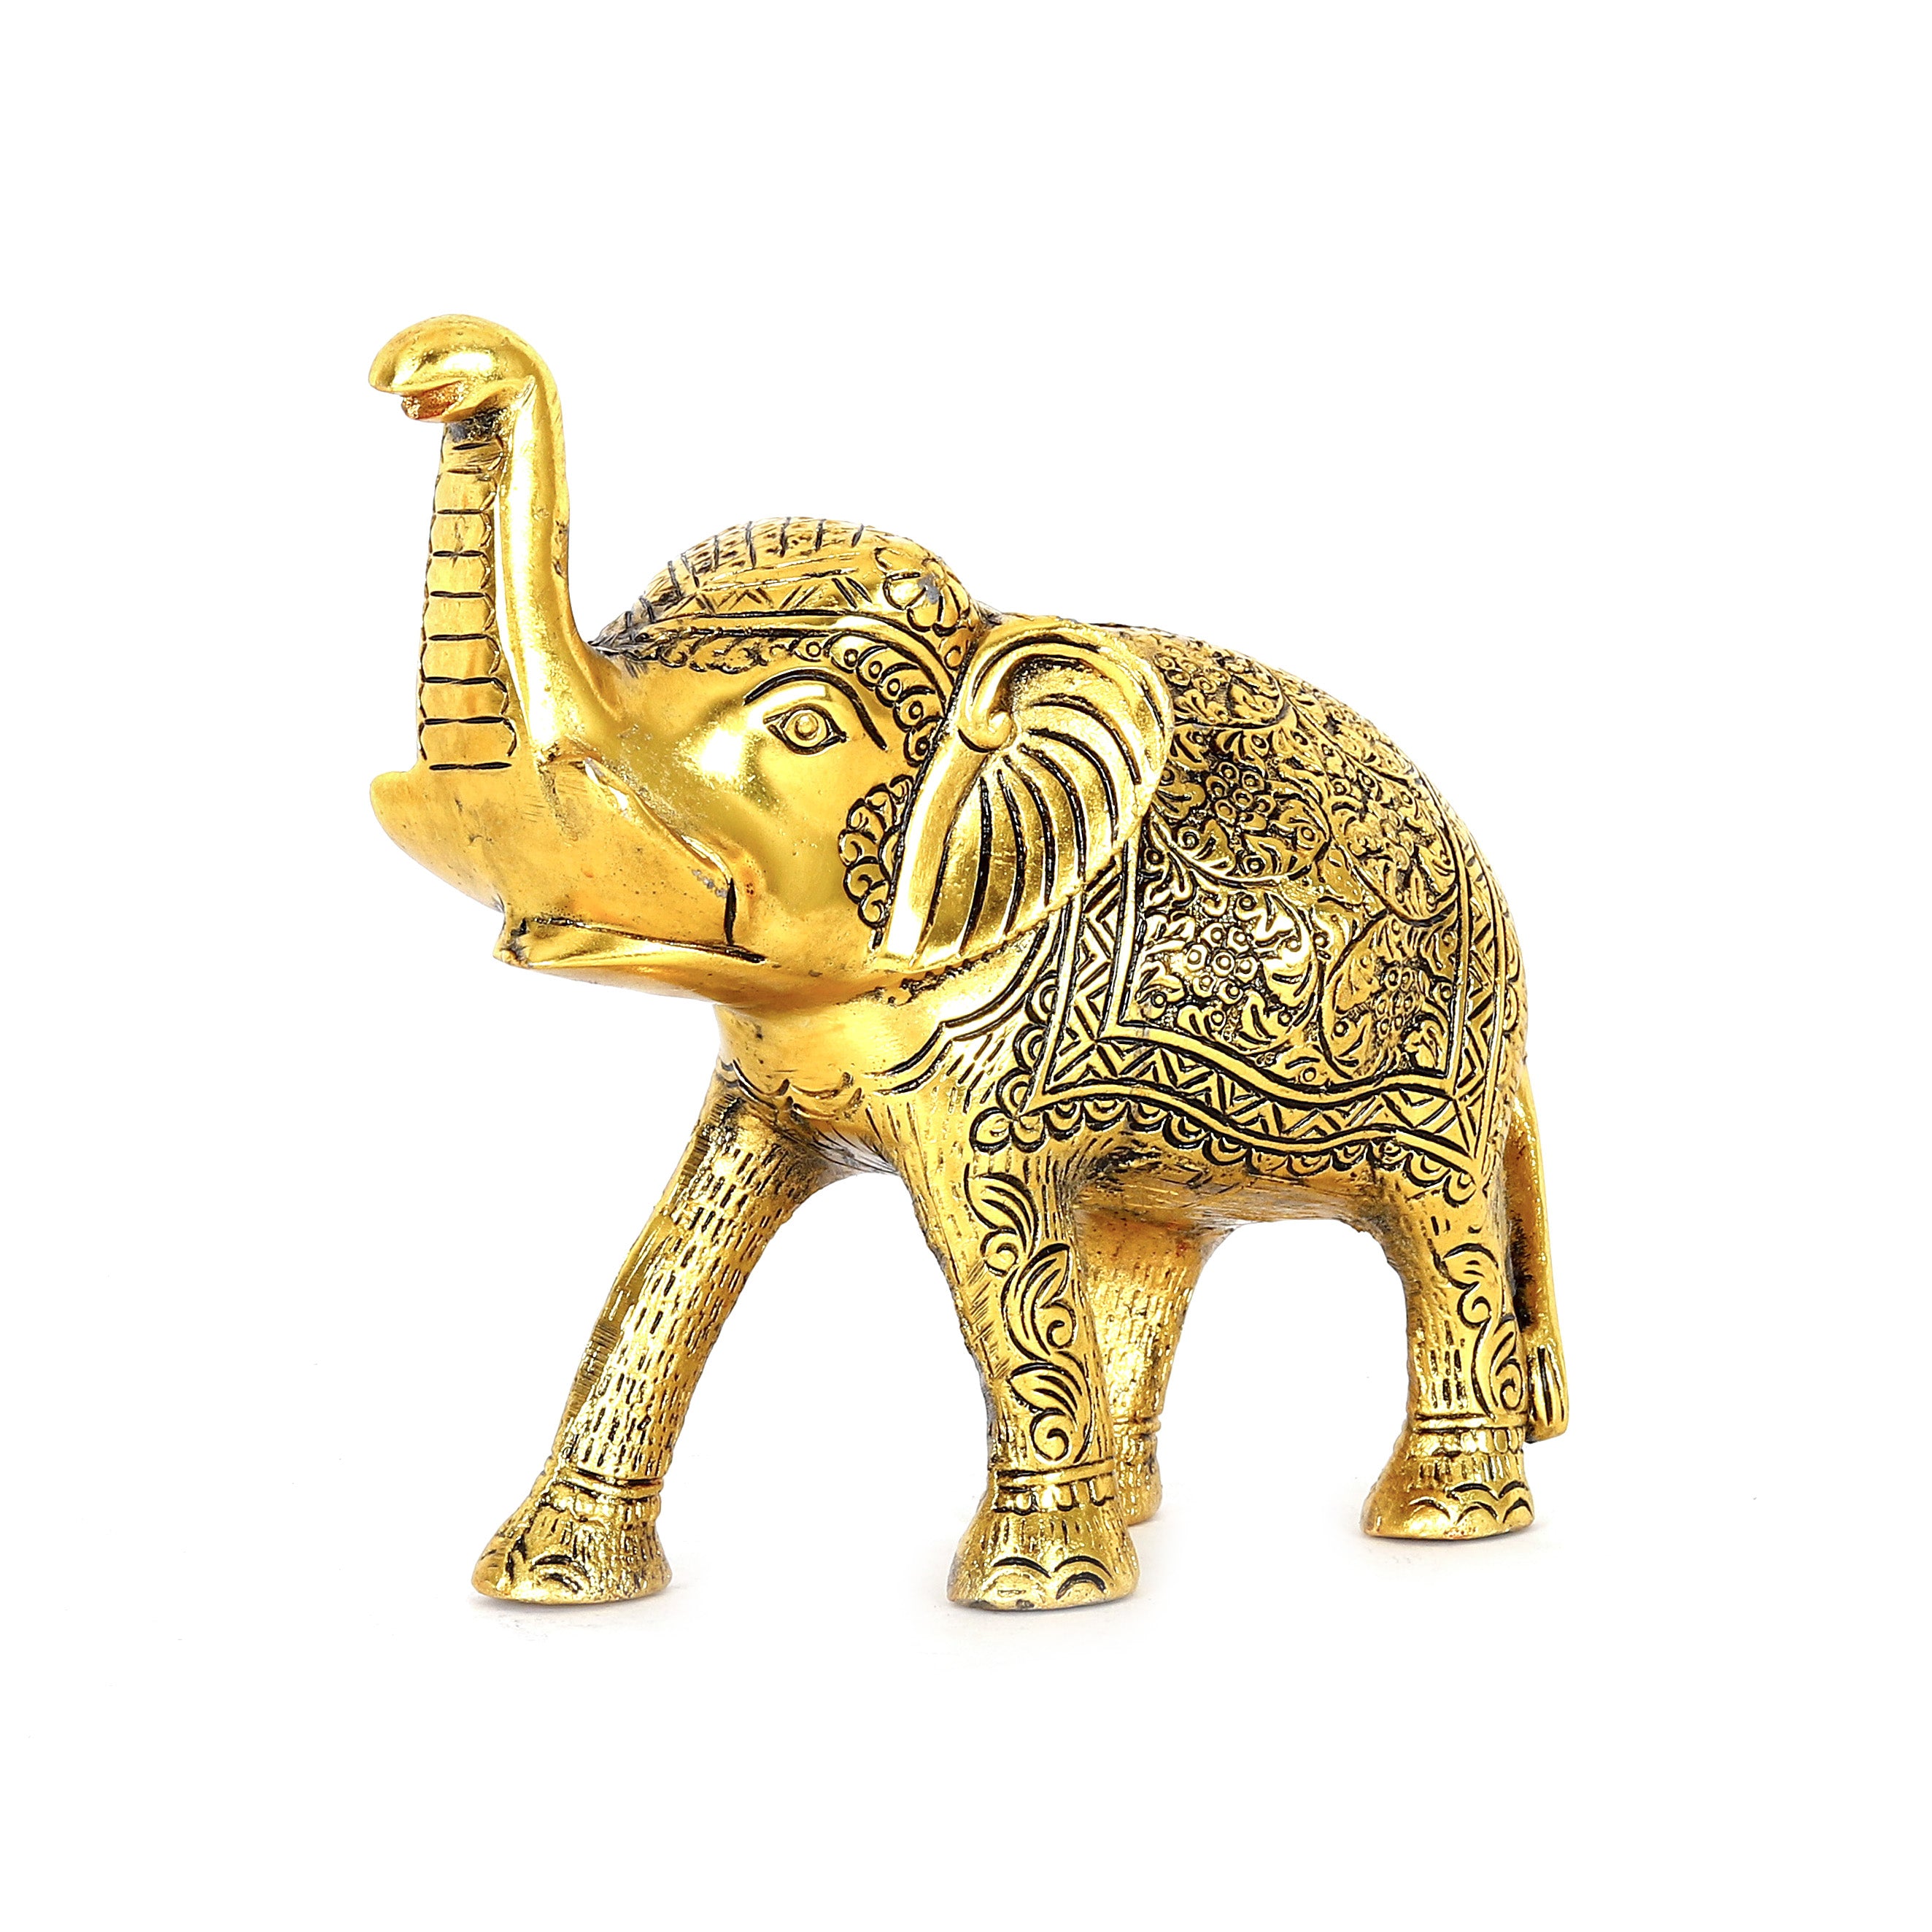 Gold-Toned Elephant Showpiece